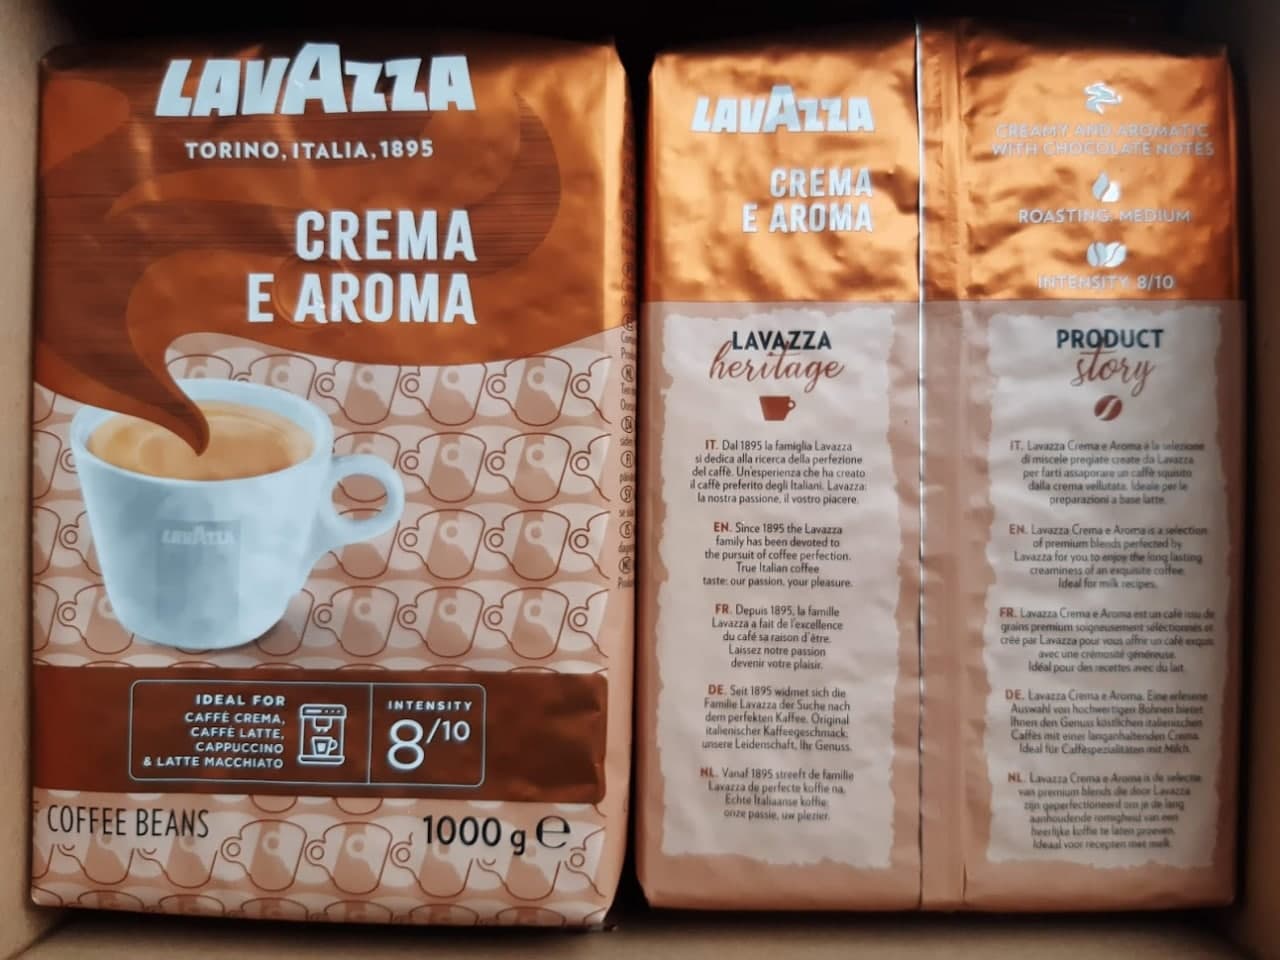 Pupiņu kafija "LAVAZZA" Crema e Aroma